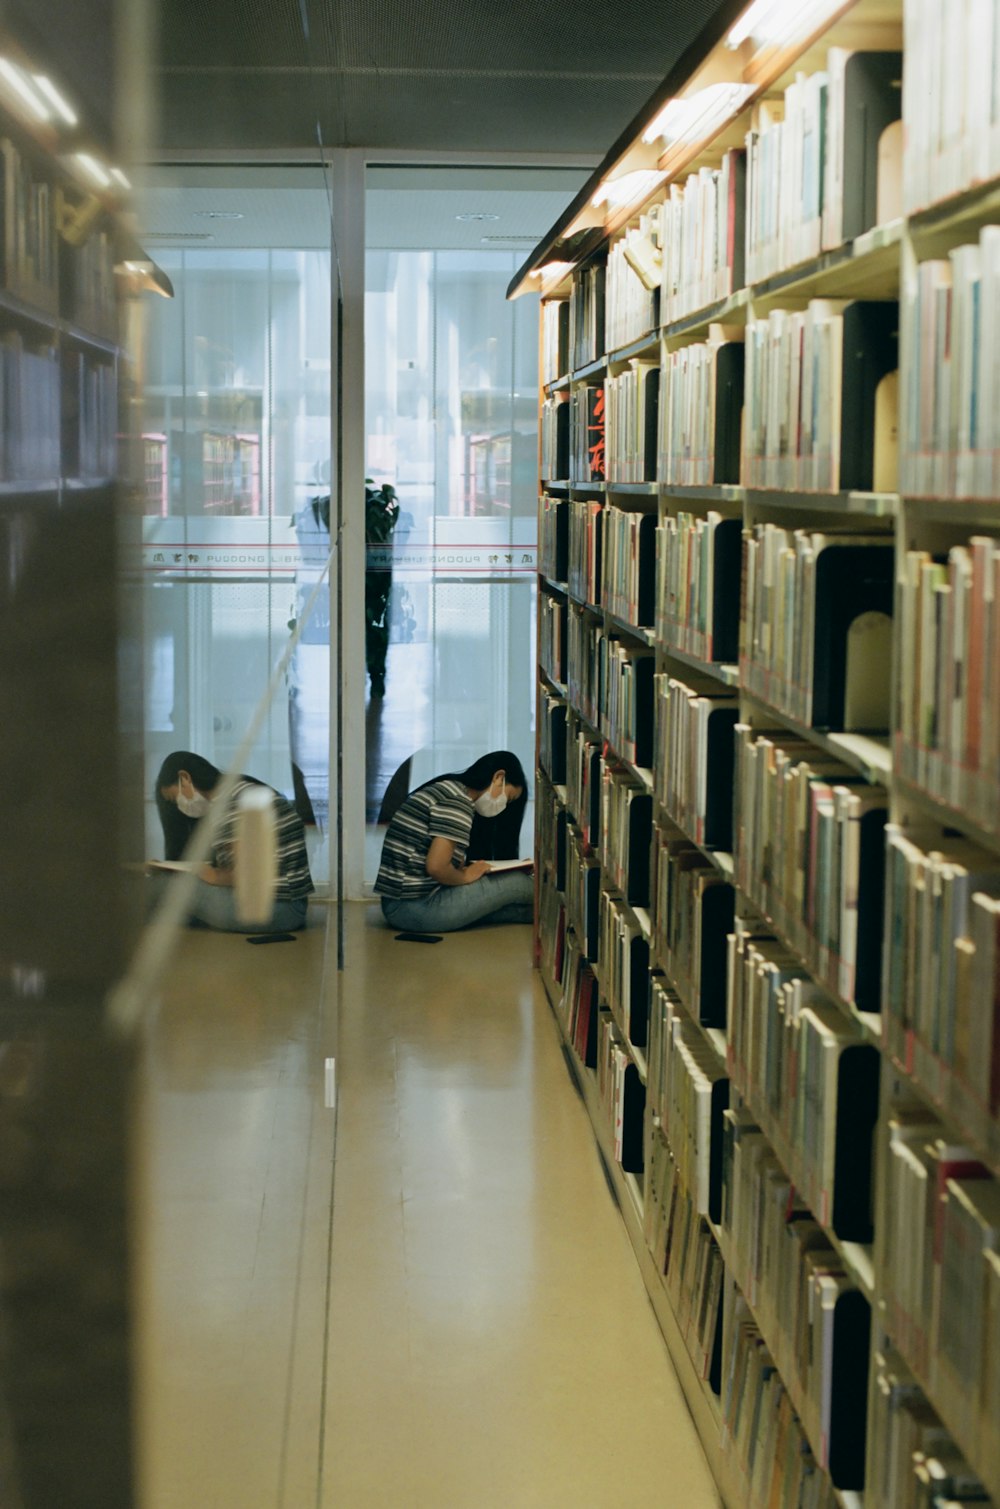 Un paio di persone sdraiate a terra in una biblioteca